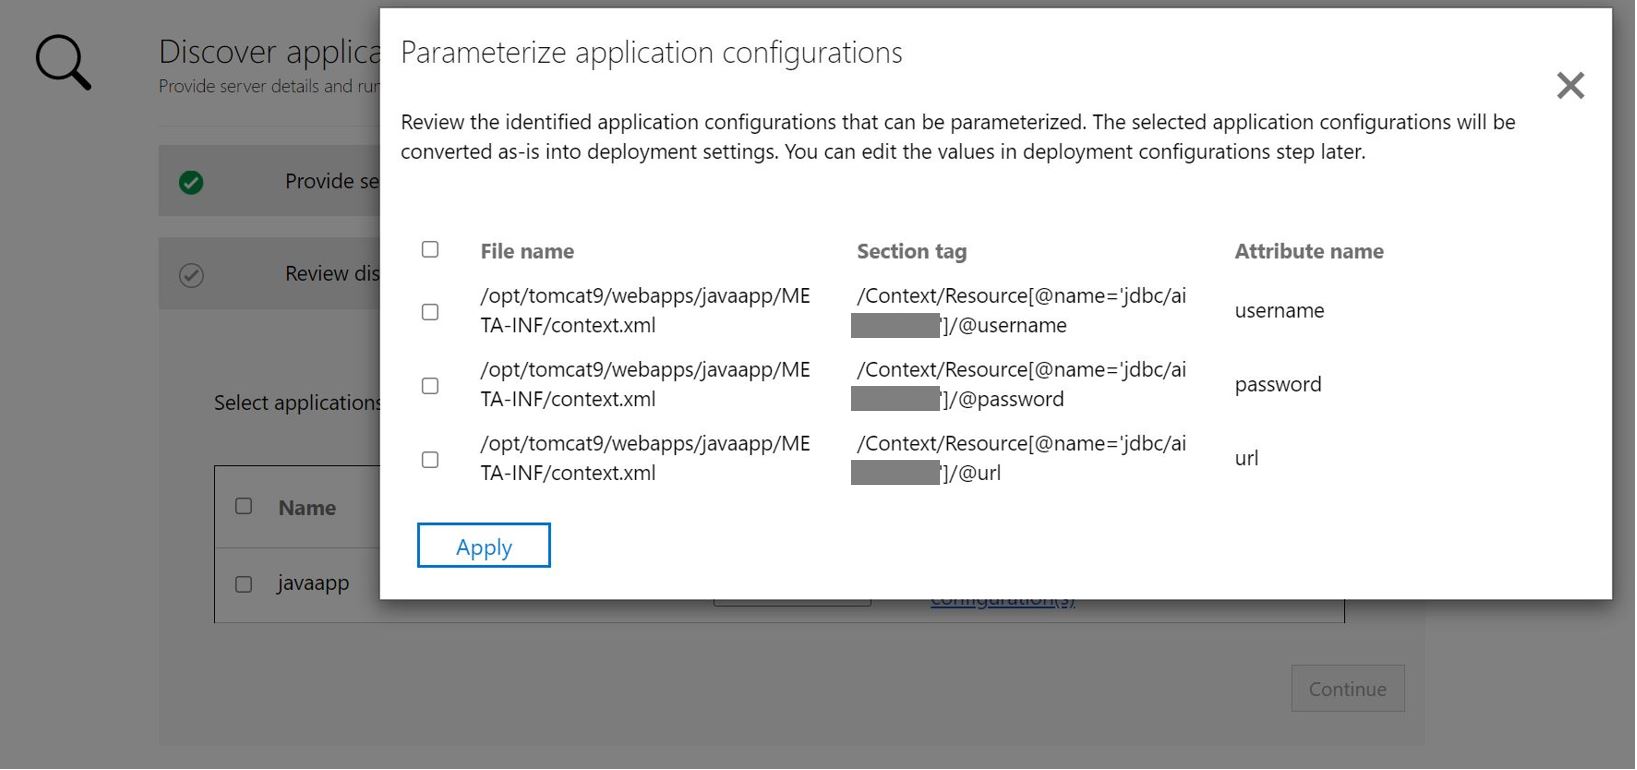 Uygulama yapılandırması parametreleştirme ASP.NET uygulamasının ekran görüntüsü.